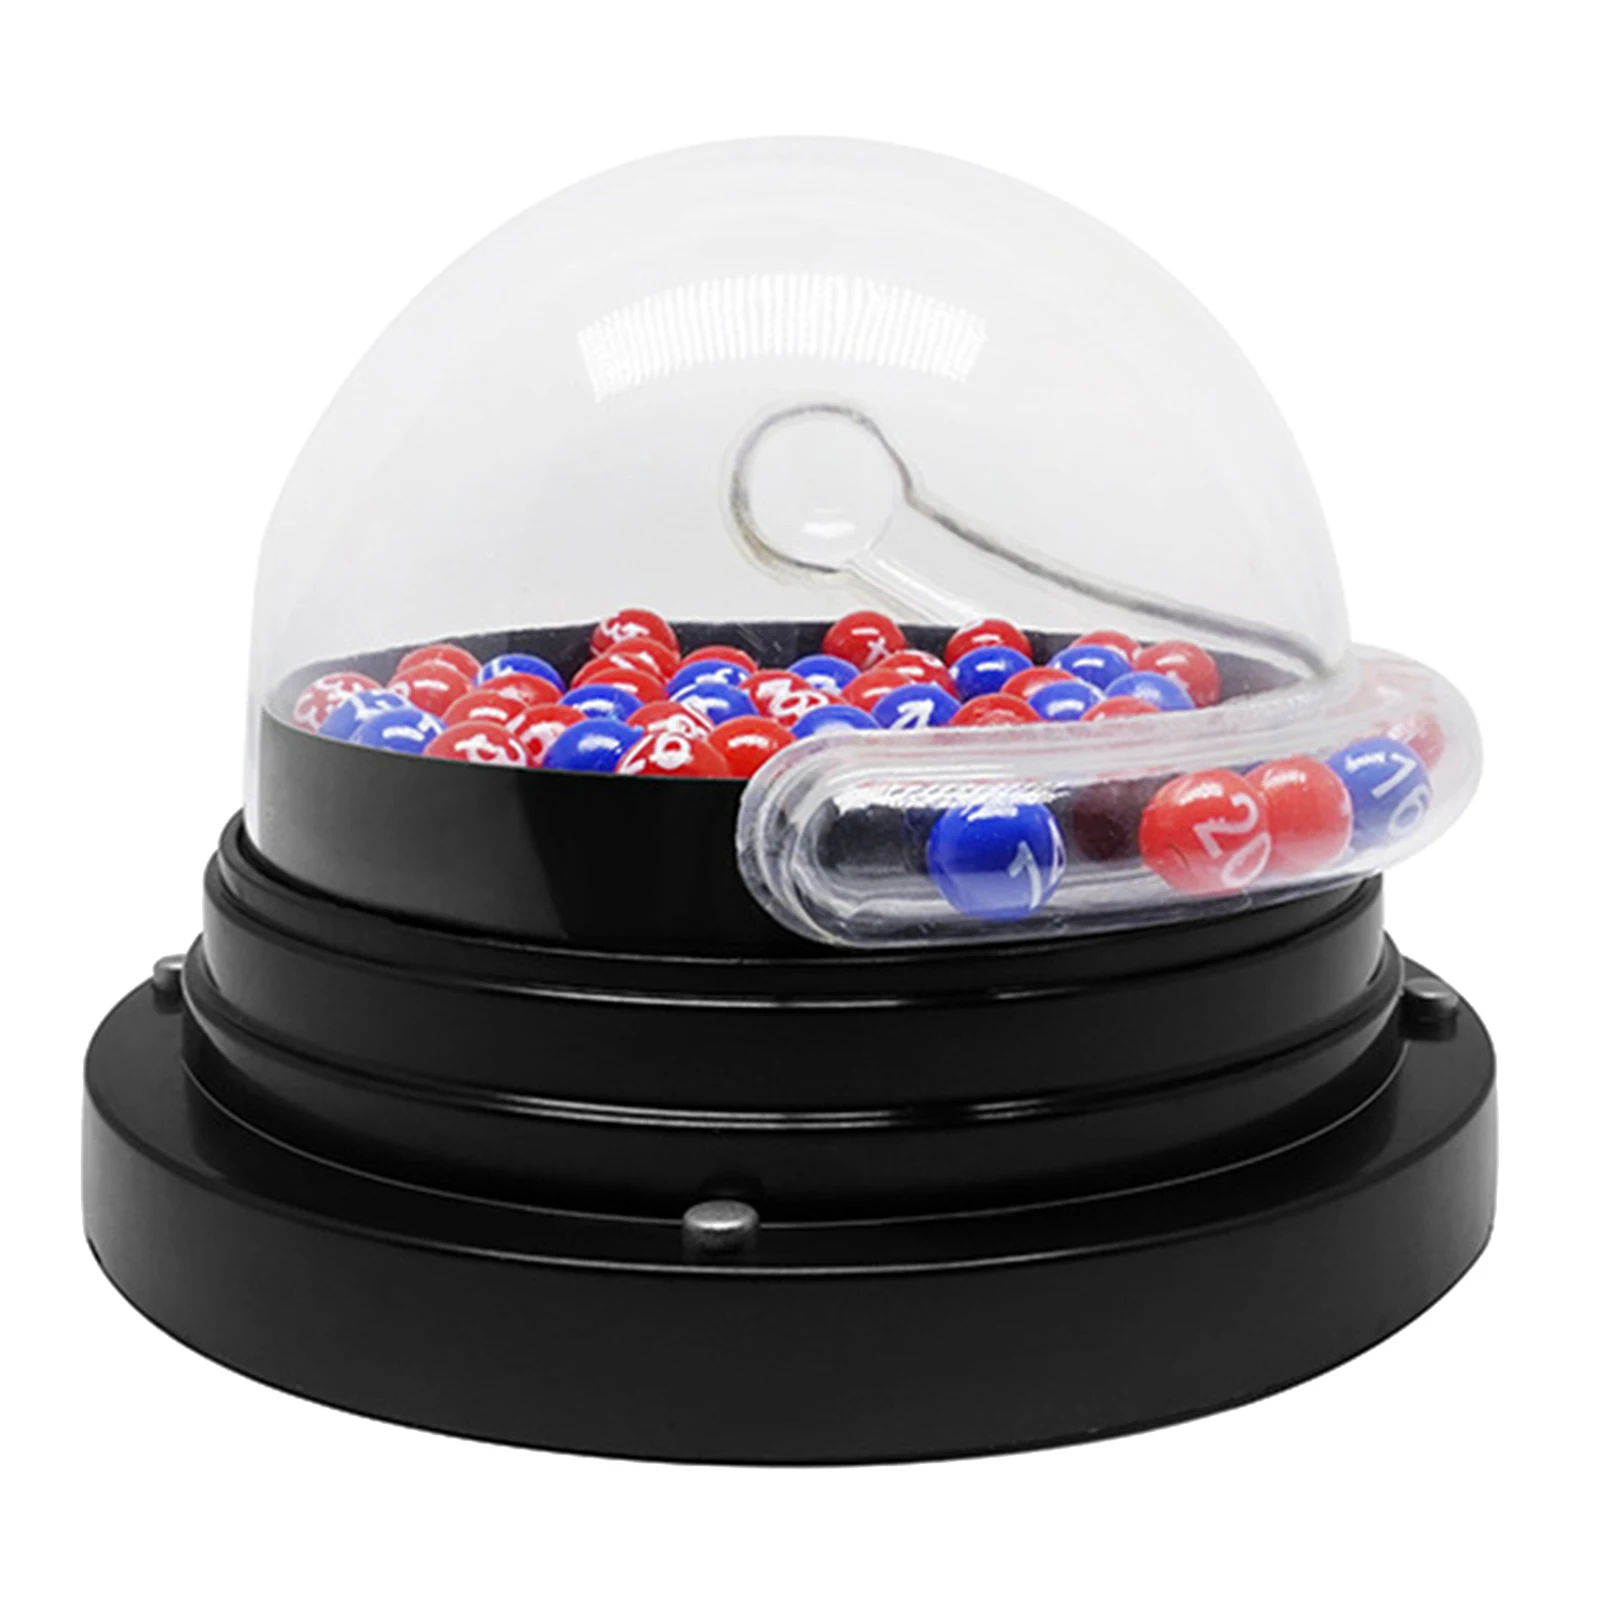 Lotto Bingo Game Bingo Machine With Bingo Balls Souvenirs Games